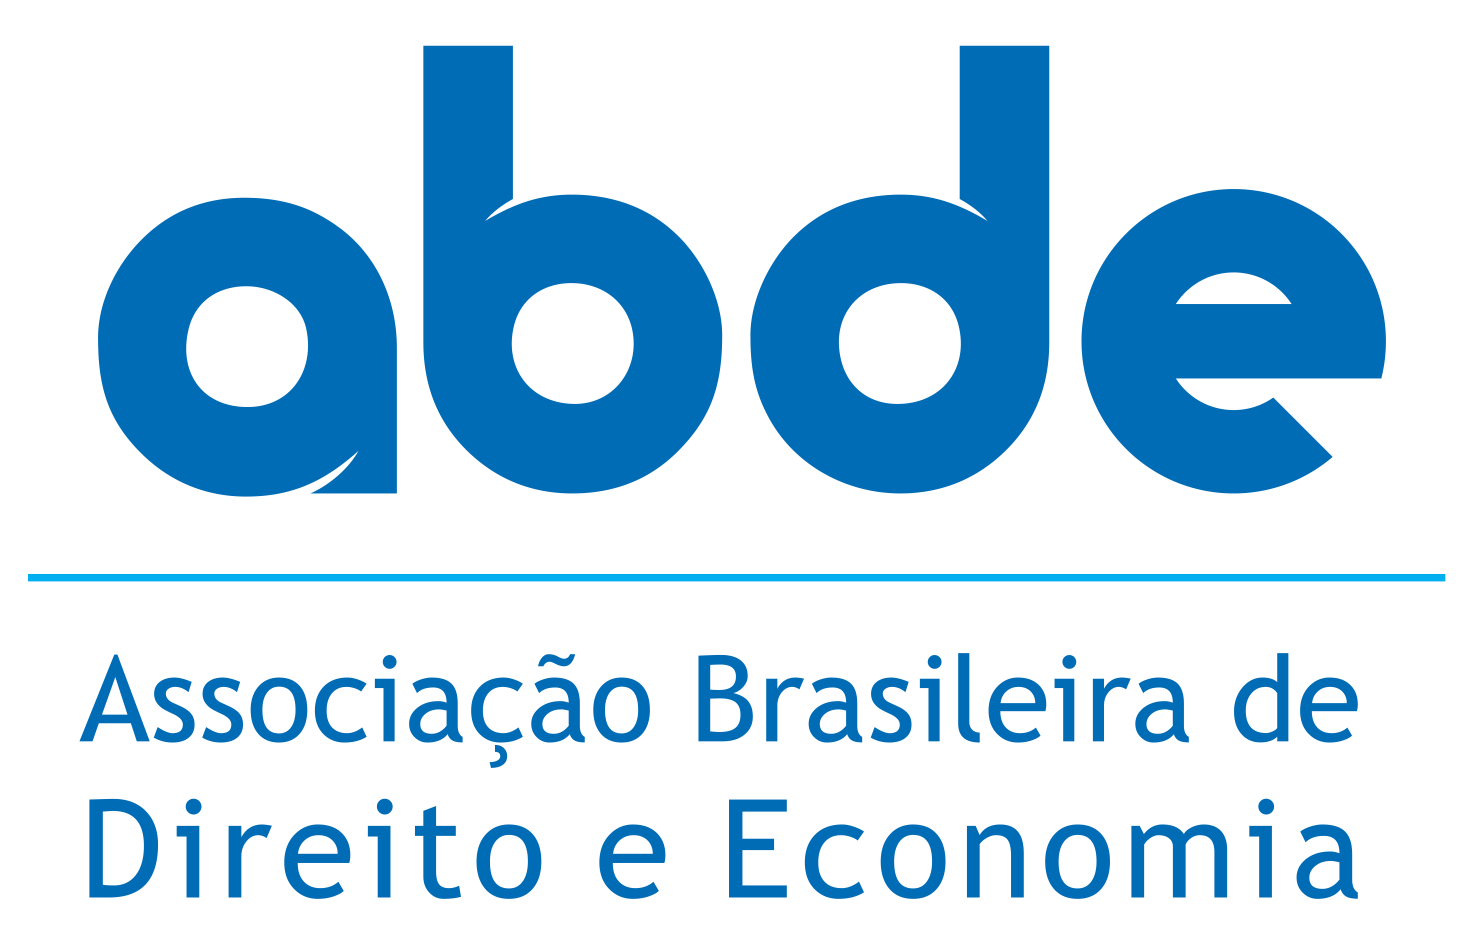 Associação Brasileira de Direito e Economia